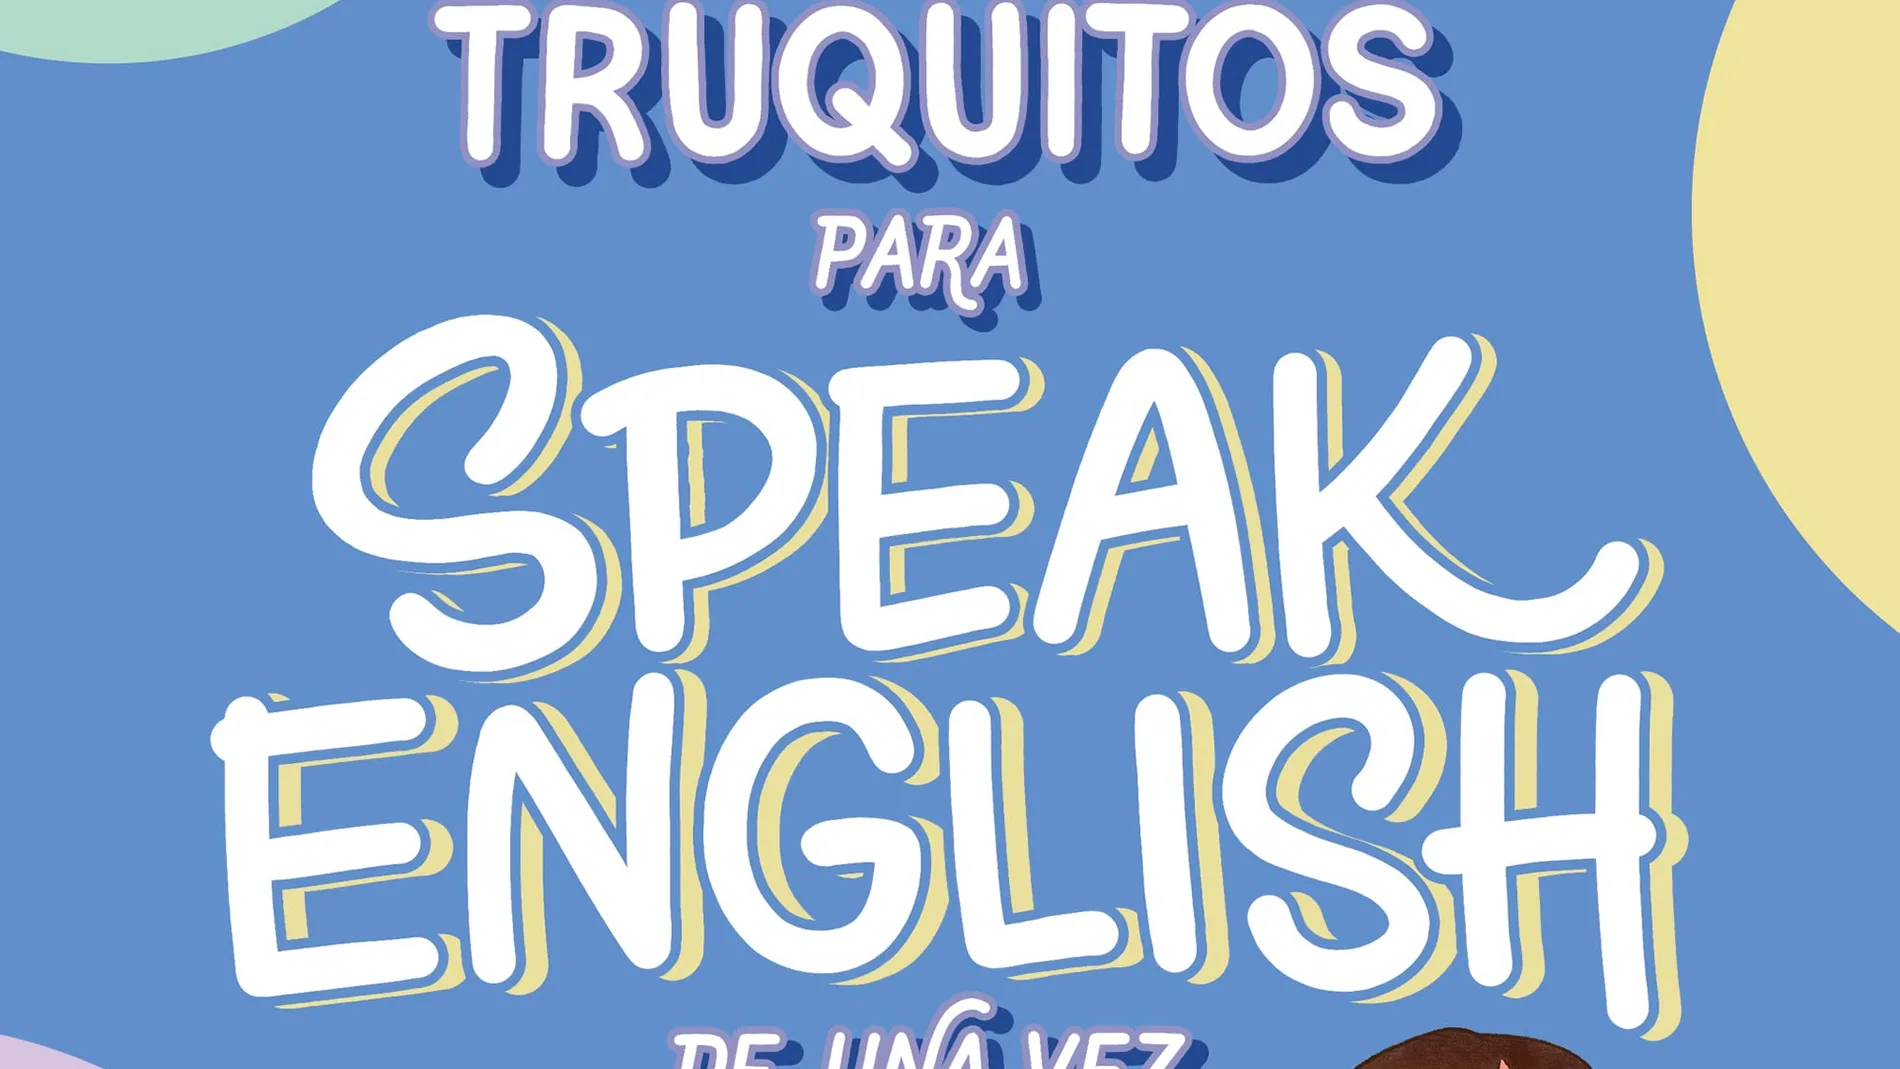 El libro para hablar inglés más vendido: “101 truquitos para speak English de una vez por todas: el libro definitivo para aprender inglés”